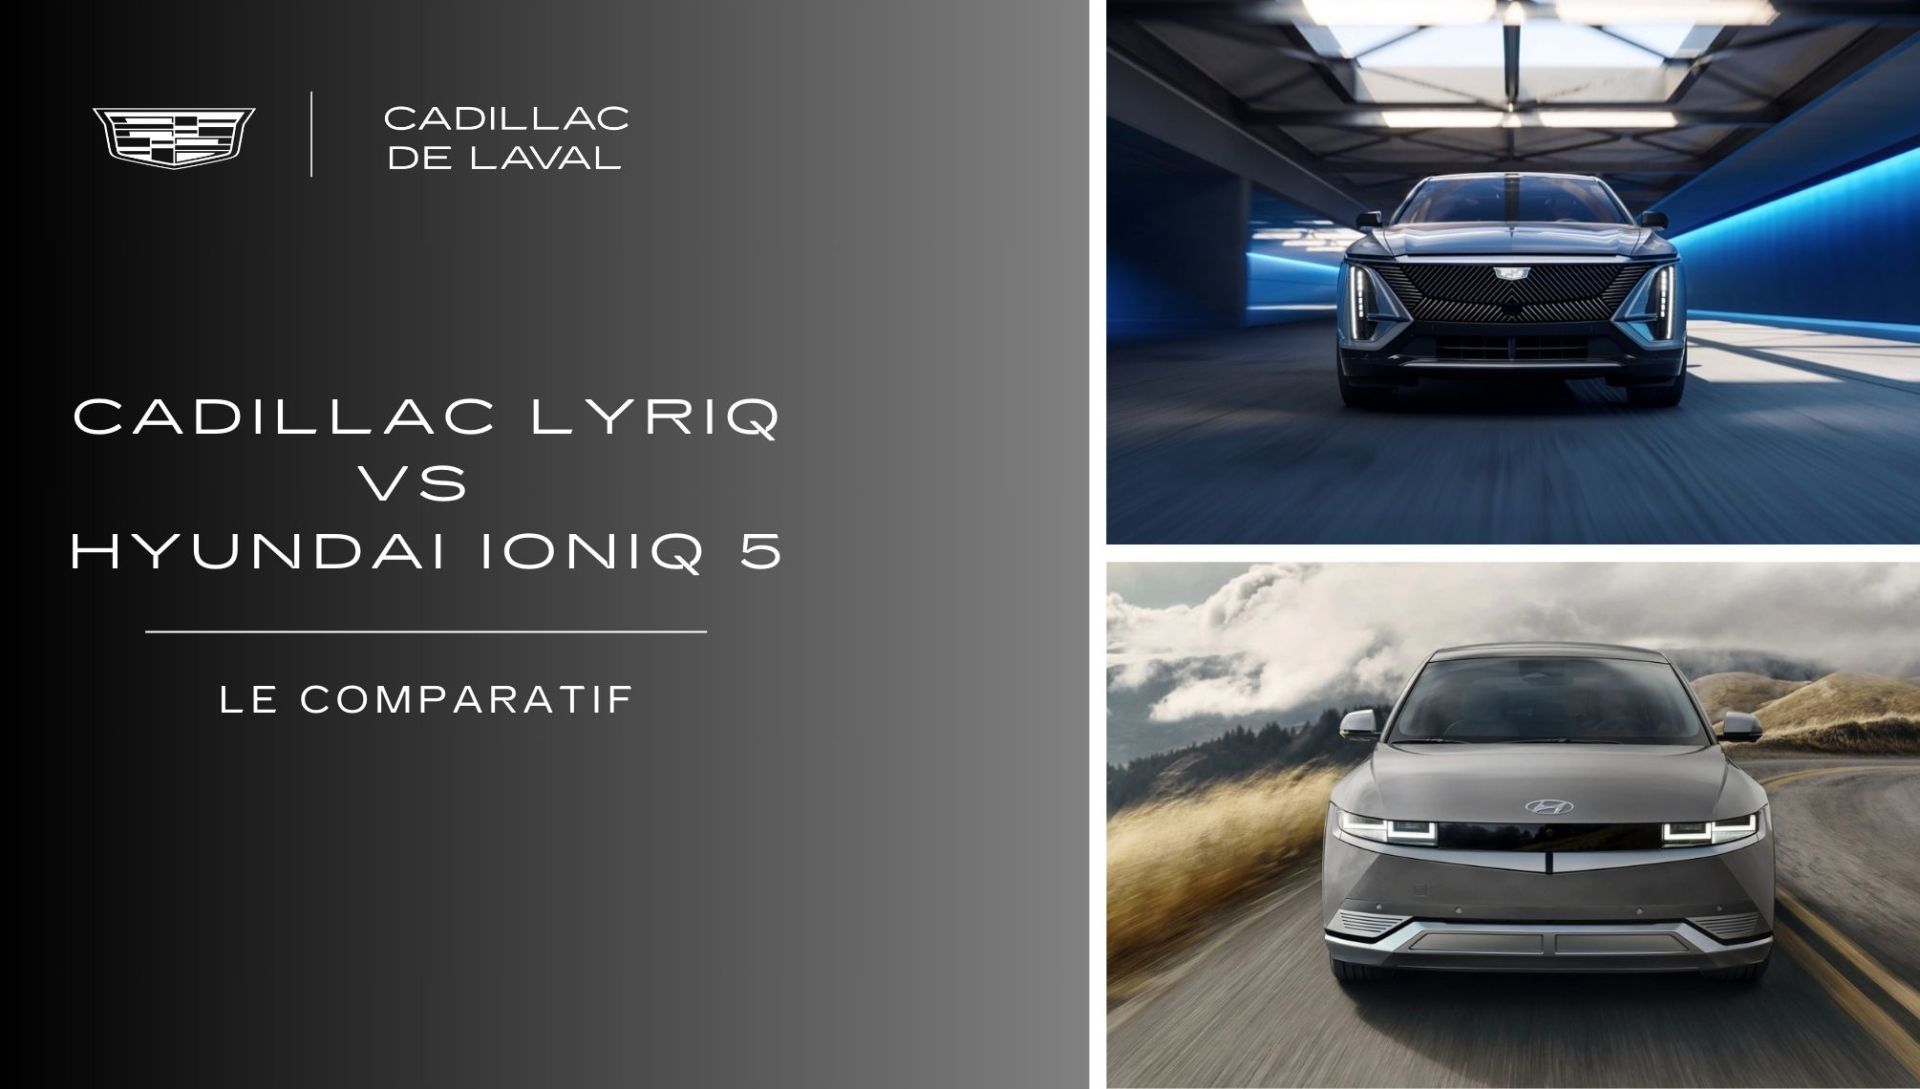 Cadillac Lyriq vs Hyundai Ioniq 5: A comparison